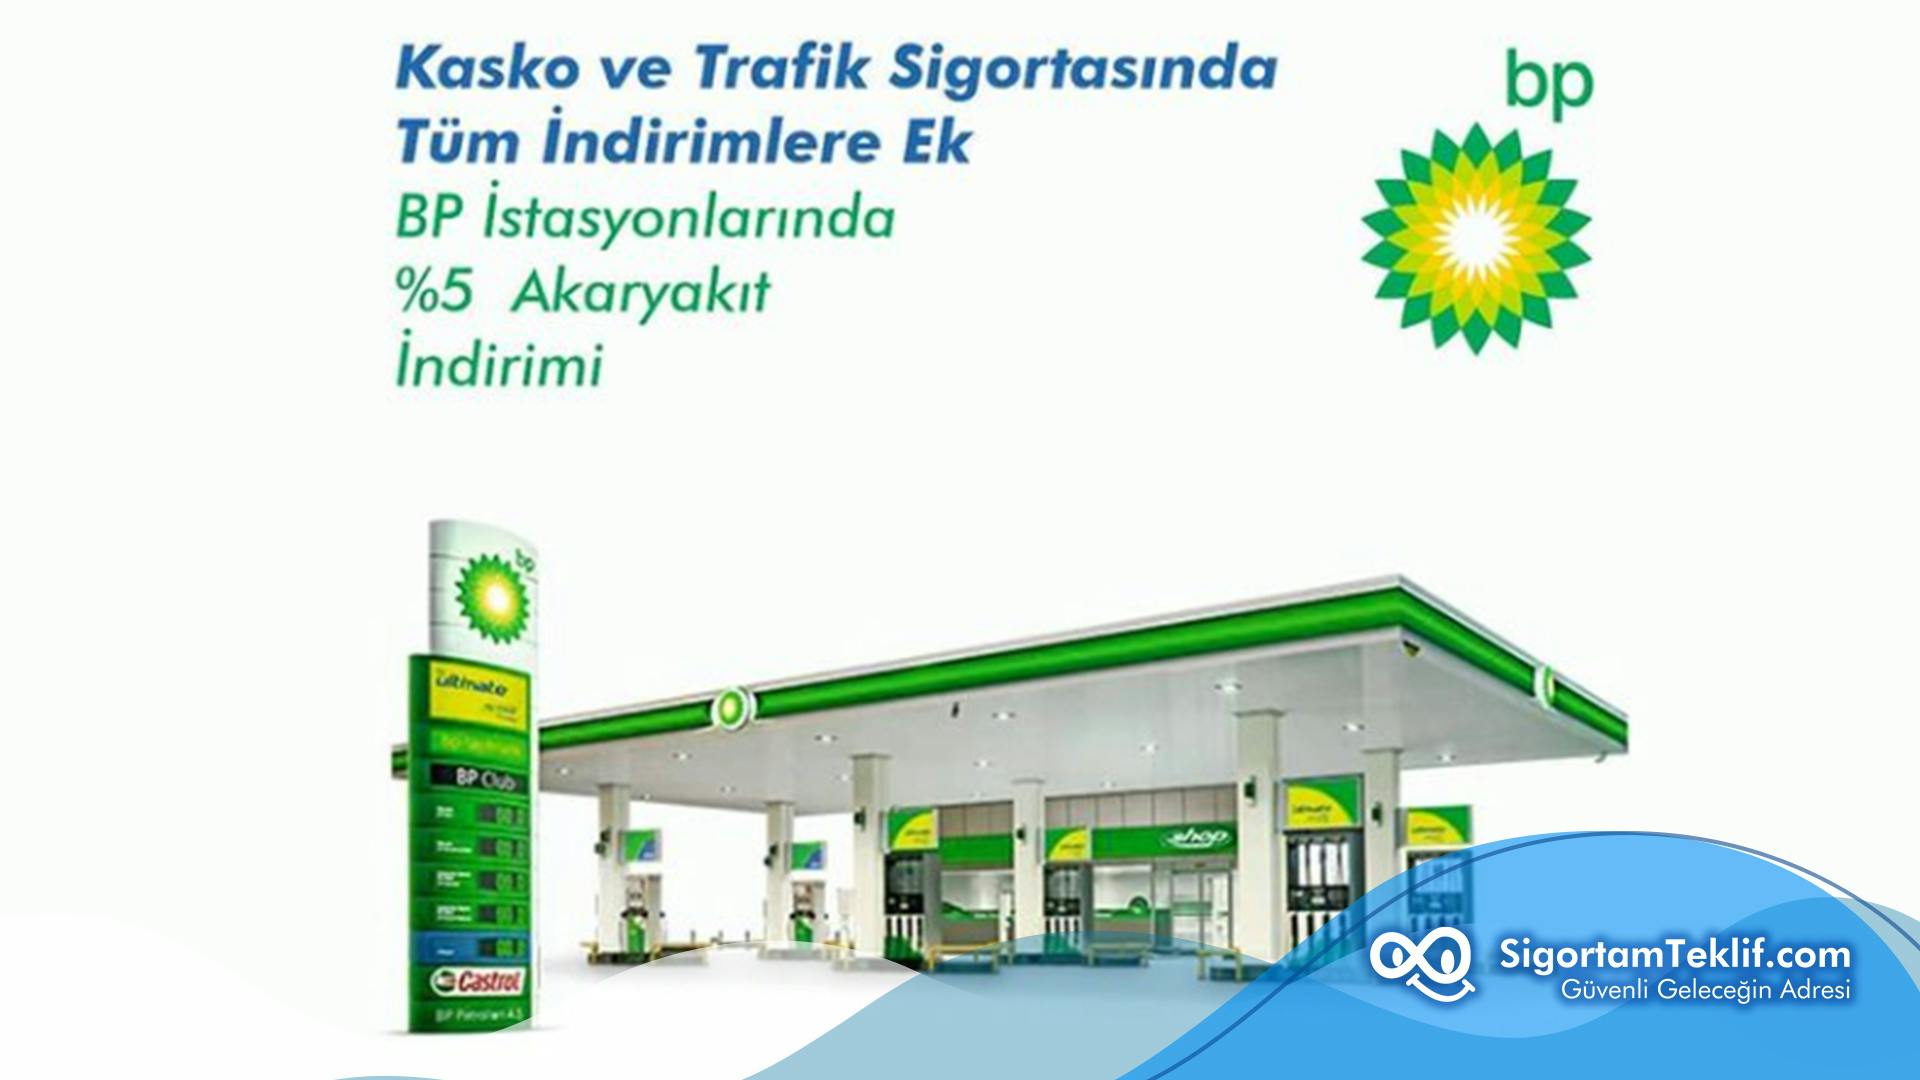 Kasko Ve Trafik Sigortalarında BP İstasyonlarında Akaryakıt İndirimi!